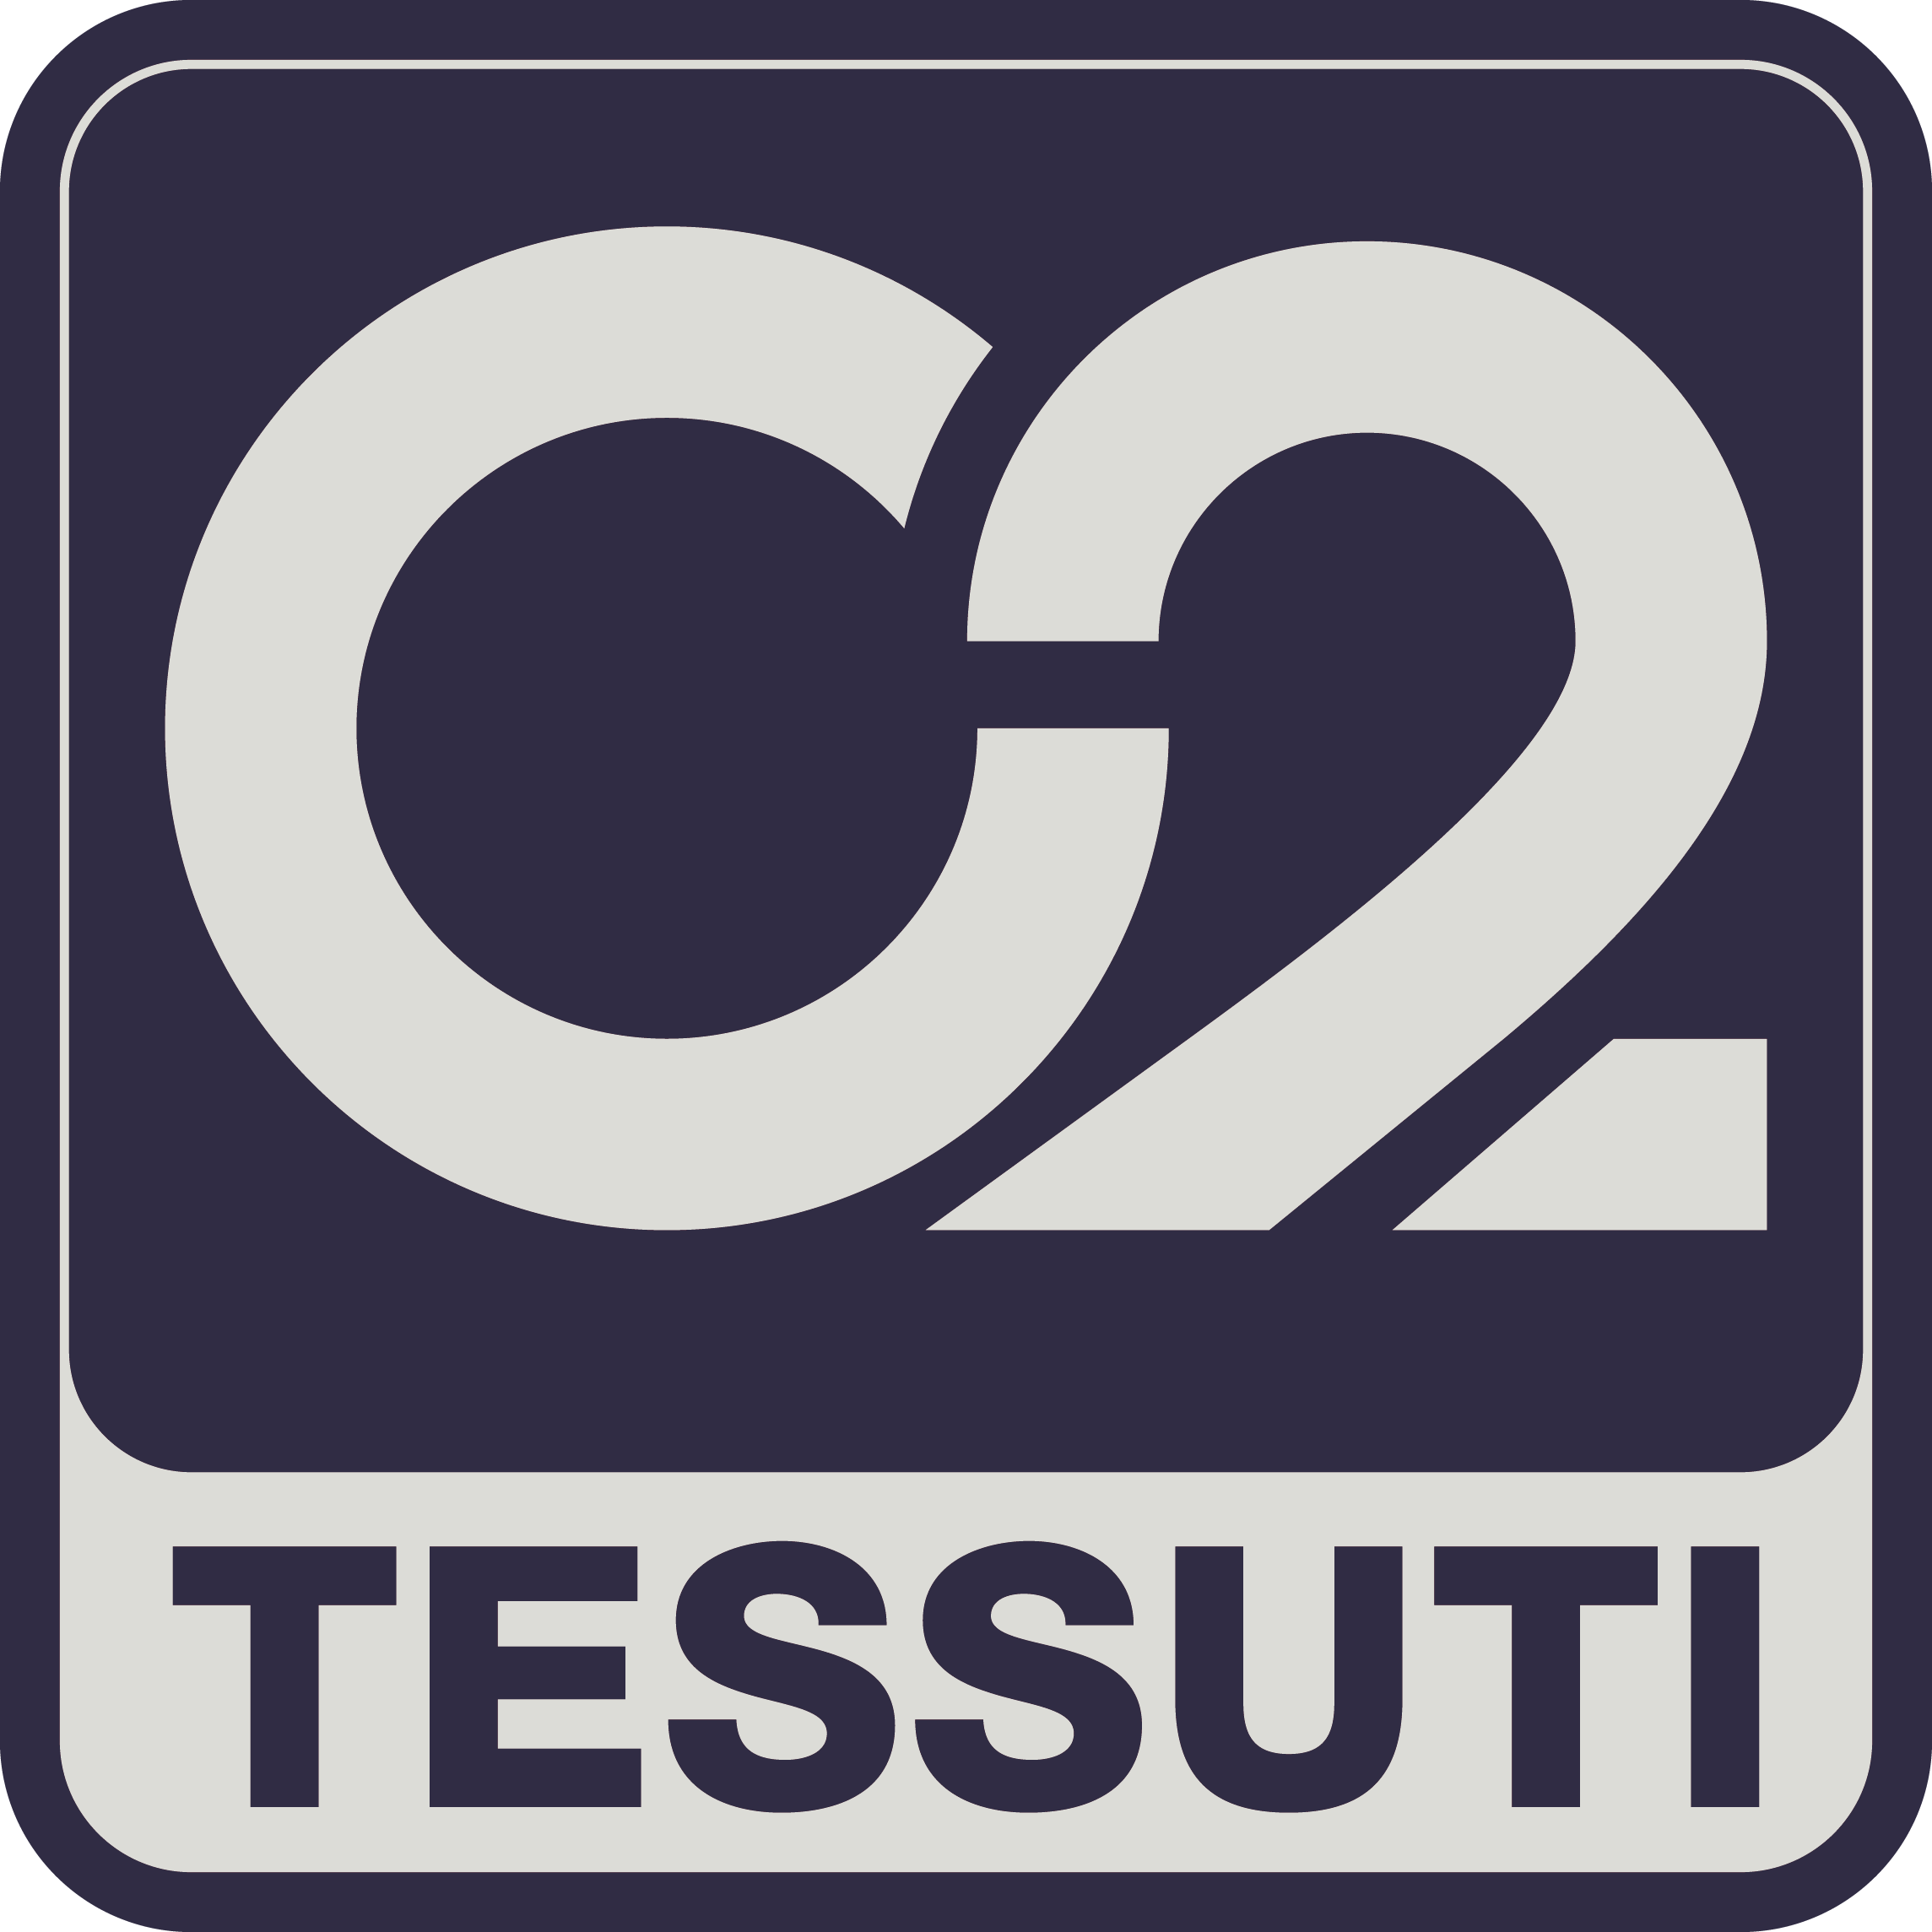 C2 Tessuti